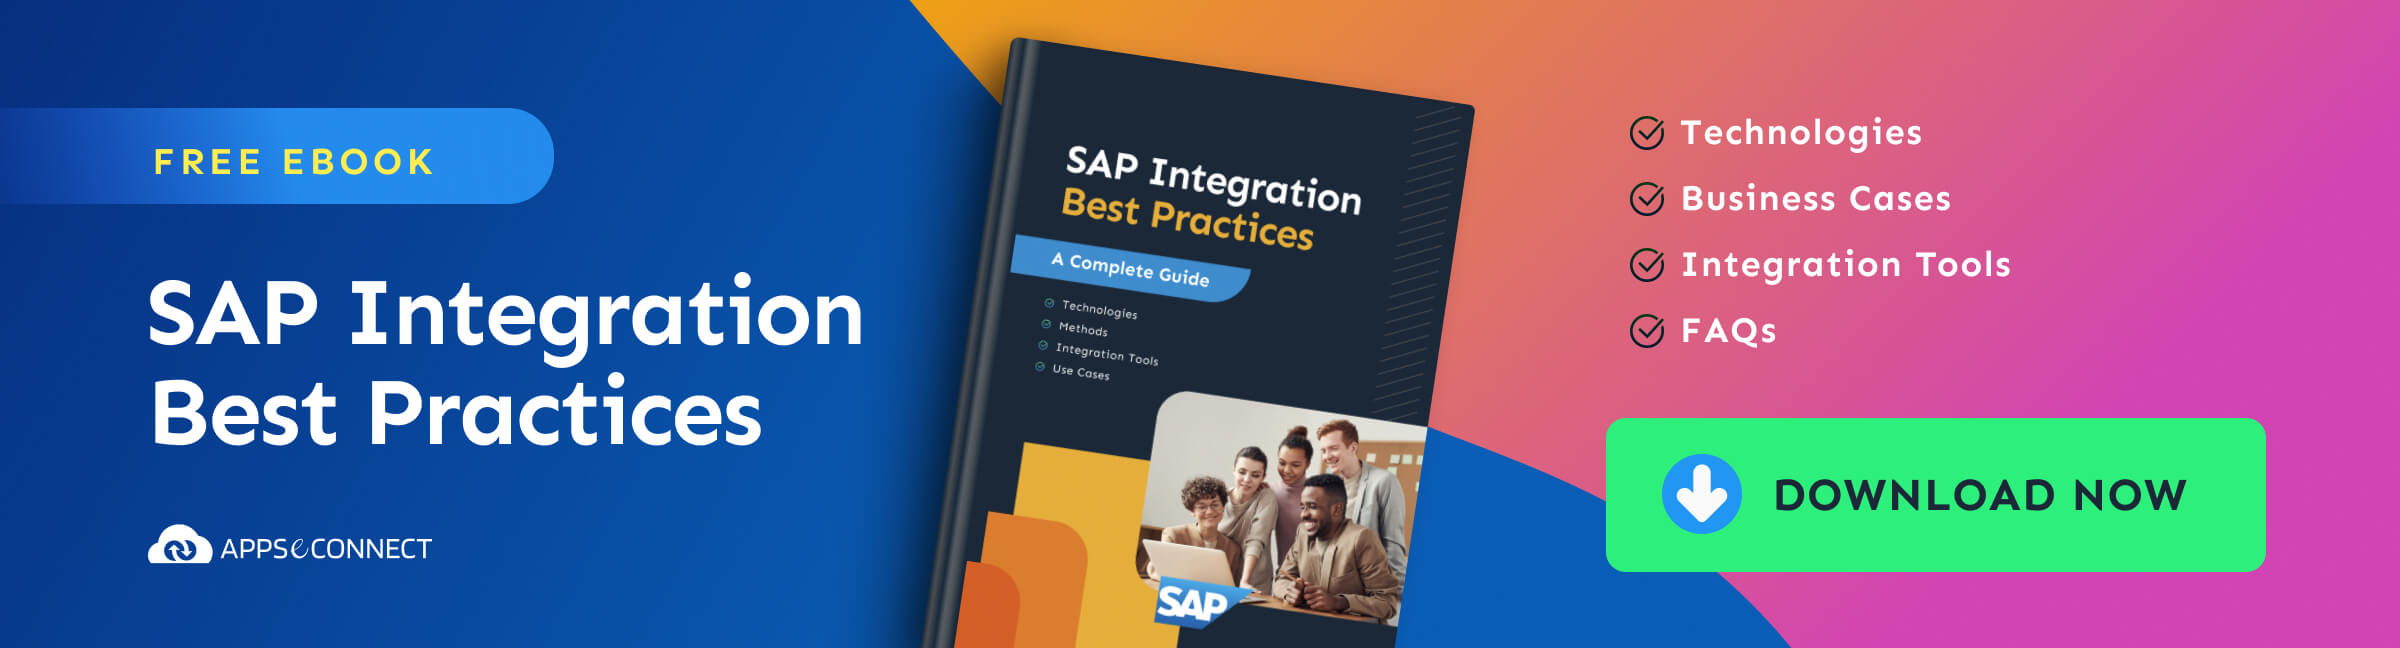 SAP Integration eBook Download CTA (1)